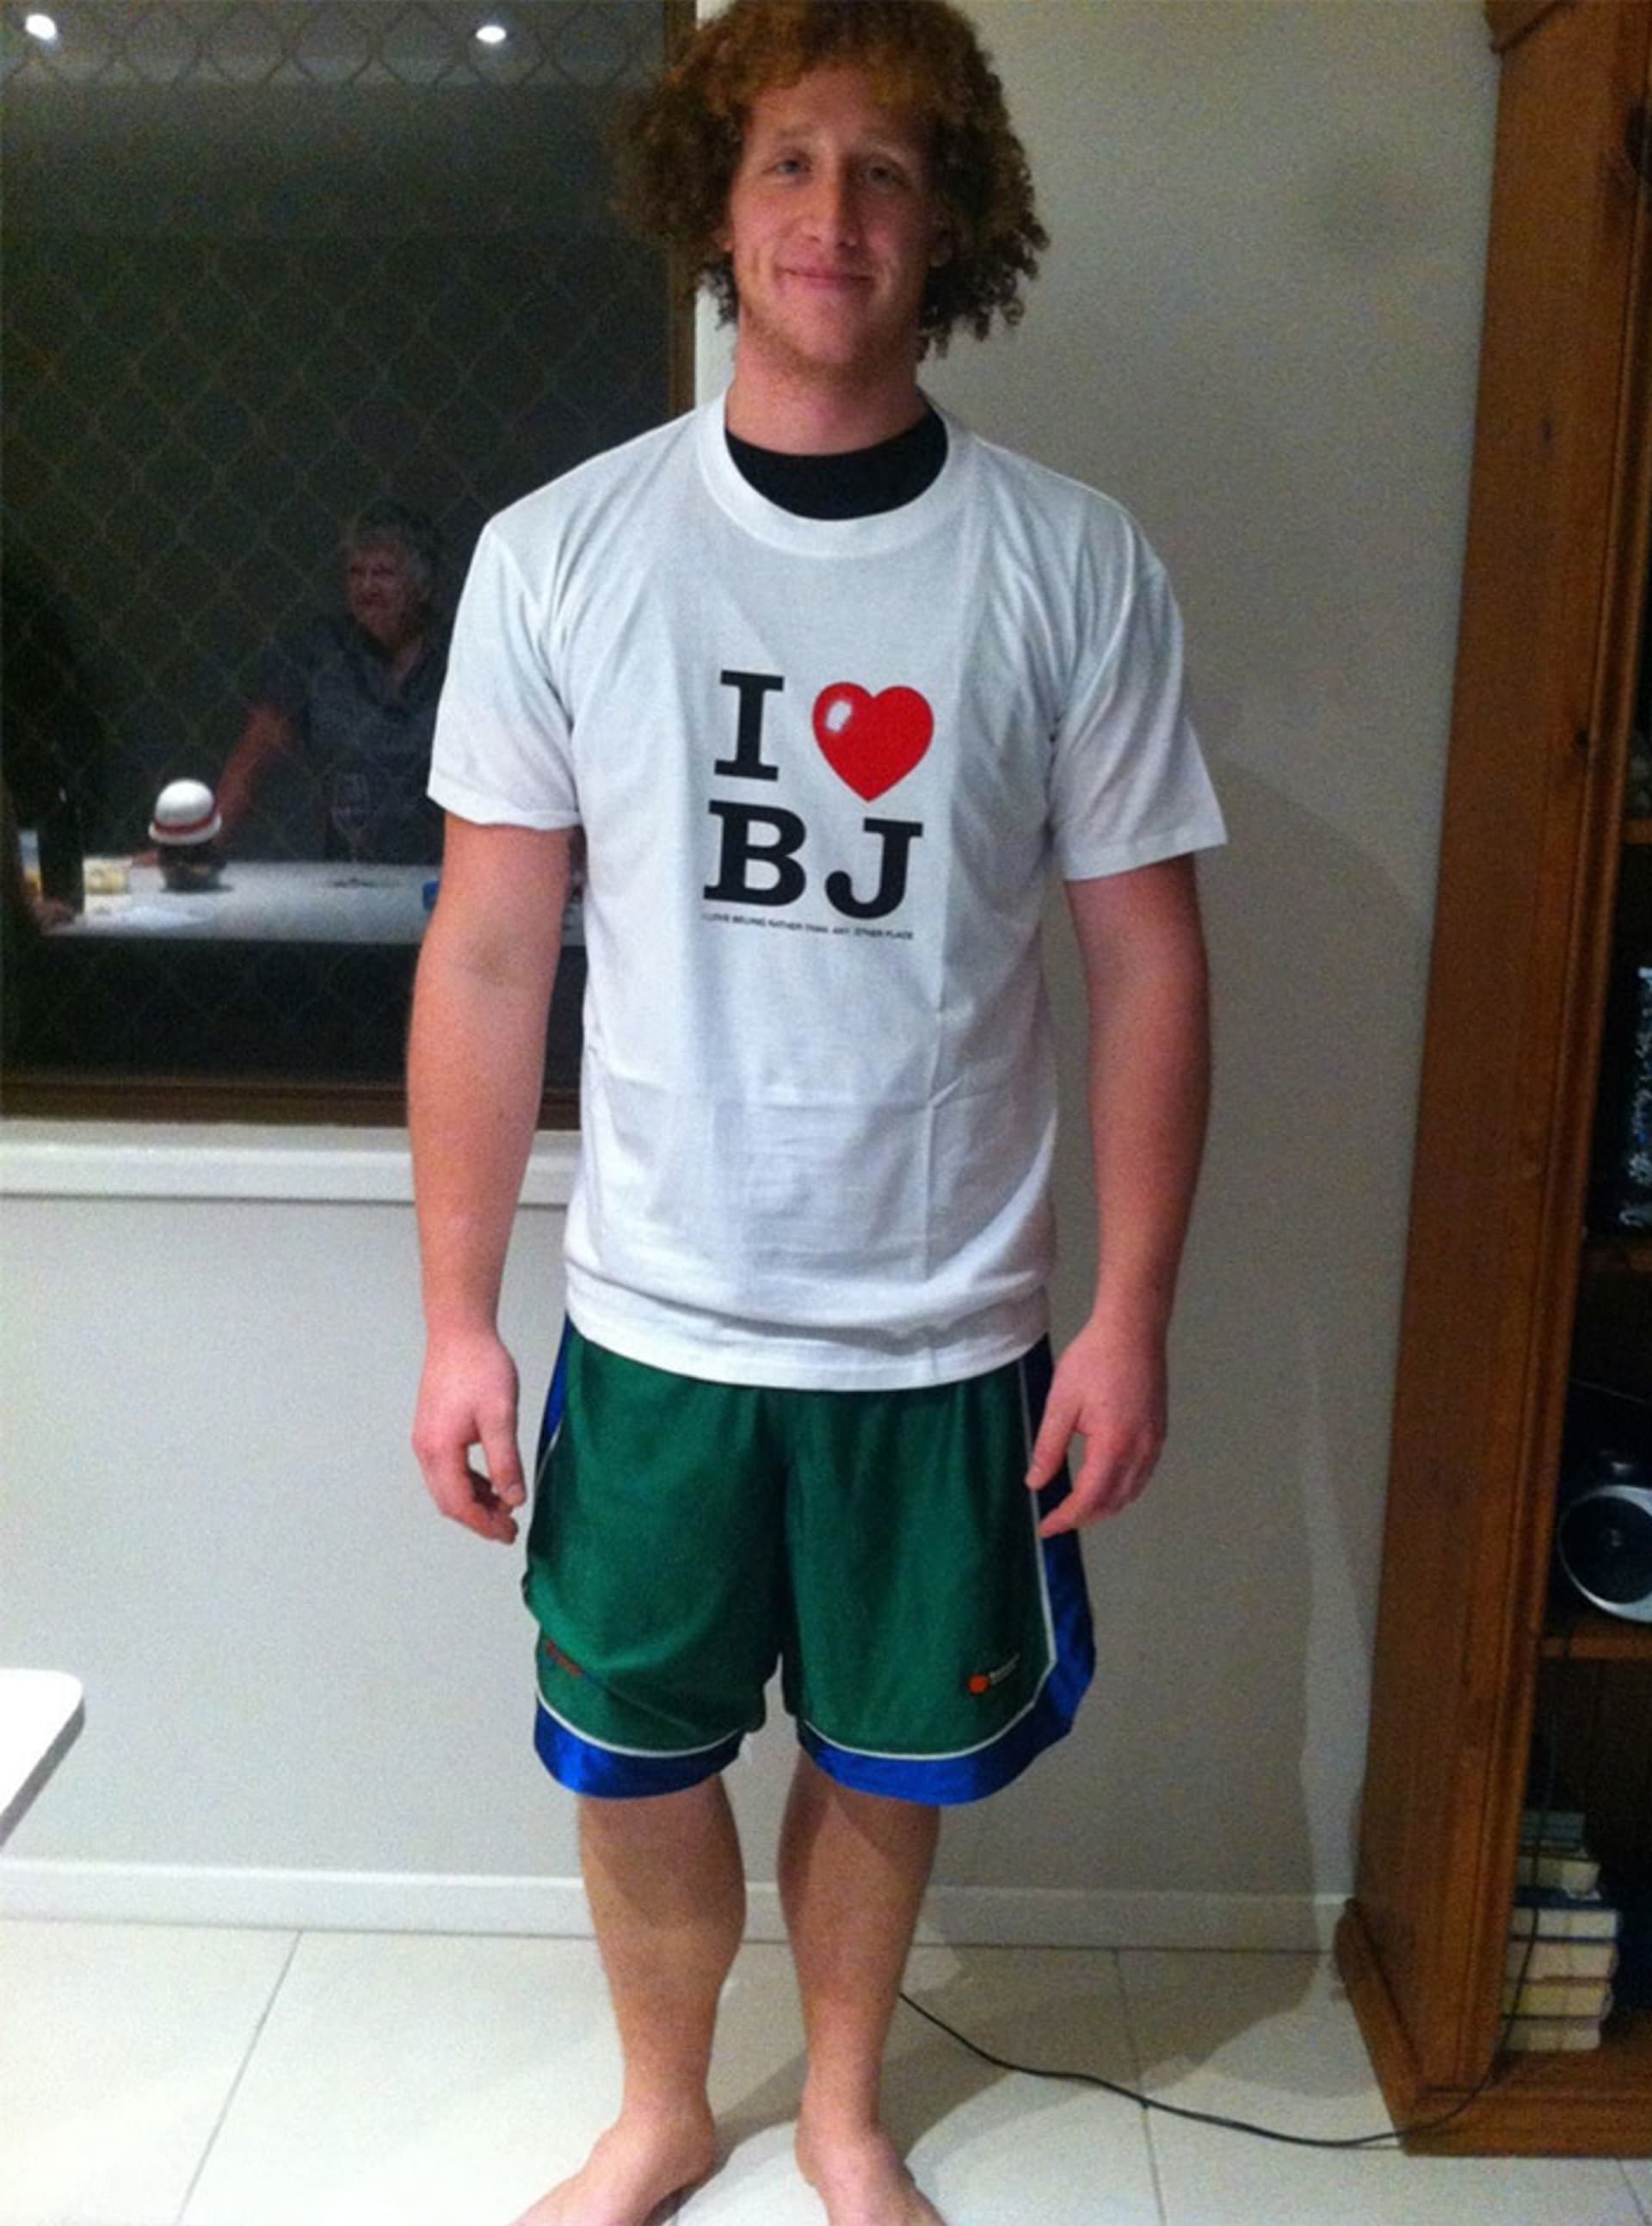 Jmenuje se Brodie Jonas, tak když babička viděla tohle tričko, musela mu ho koupit, aby viděl, jak ho má ráda.